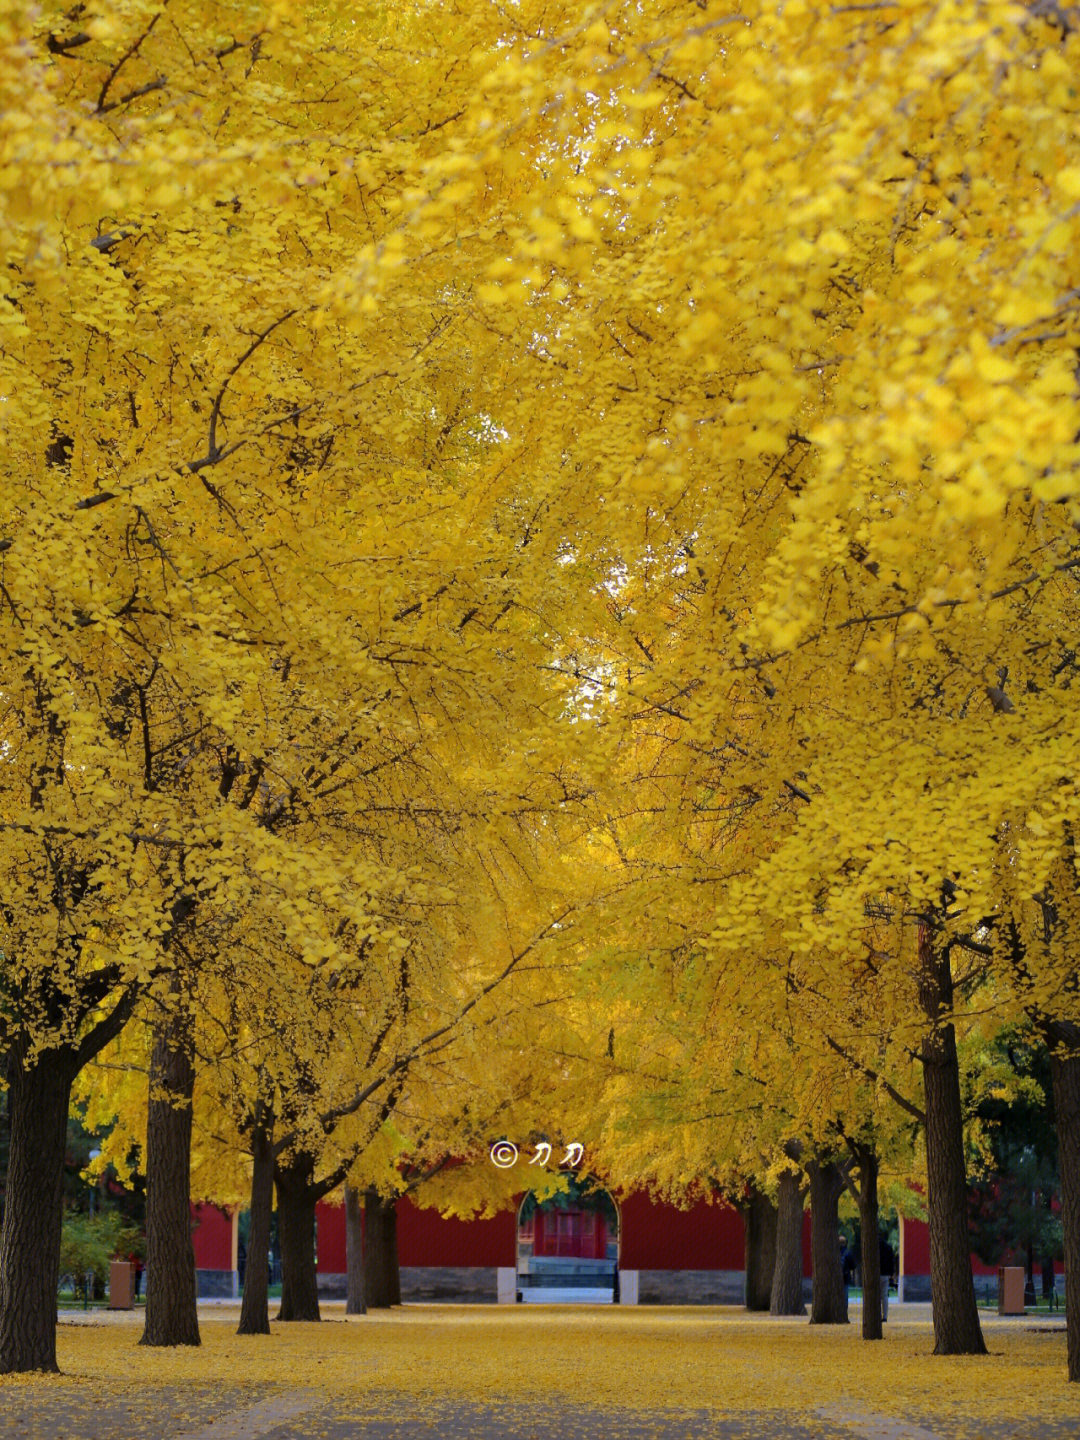 99进入深秋,北京能看银杏的地方逐渐减少,中山公园却迎来了一年中